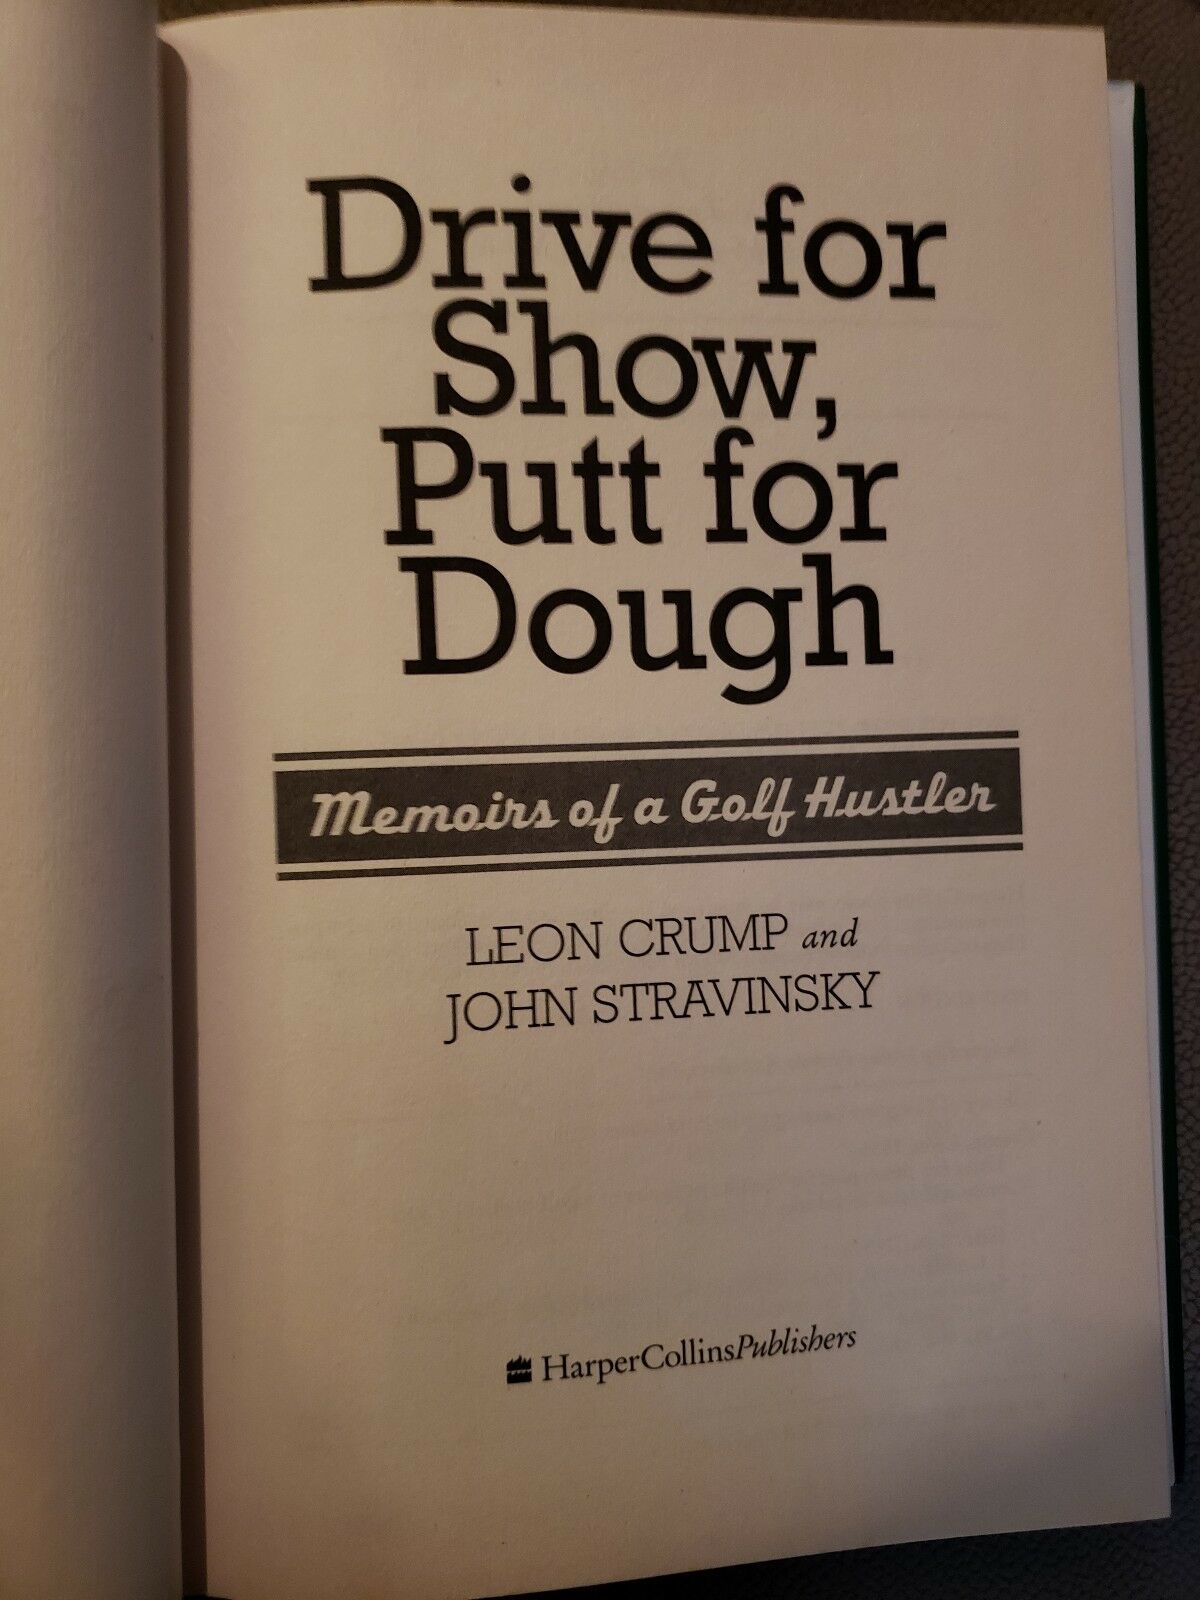 Bullpen reccomend Dough drive golf hustler memoir putt show